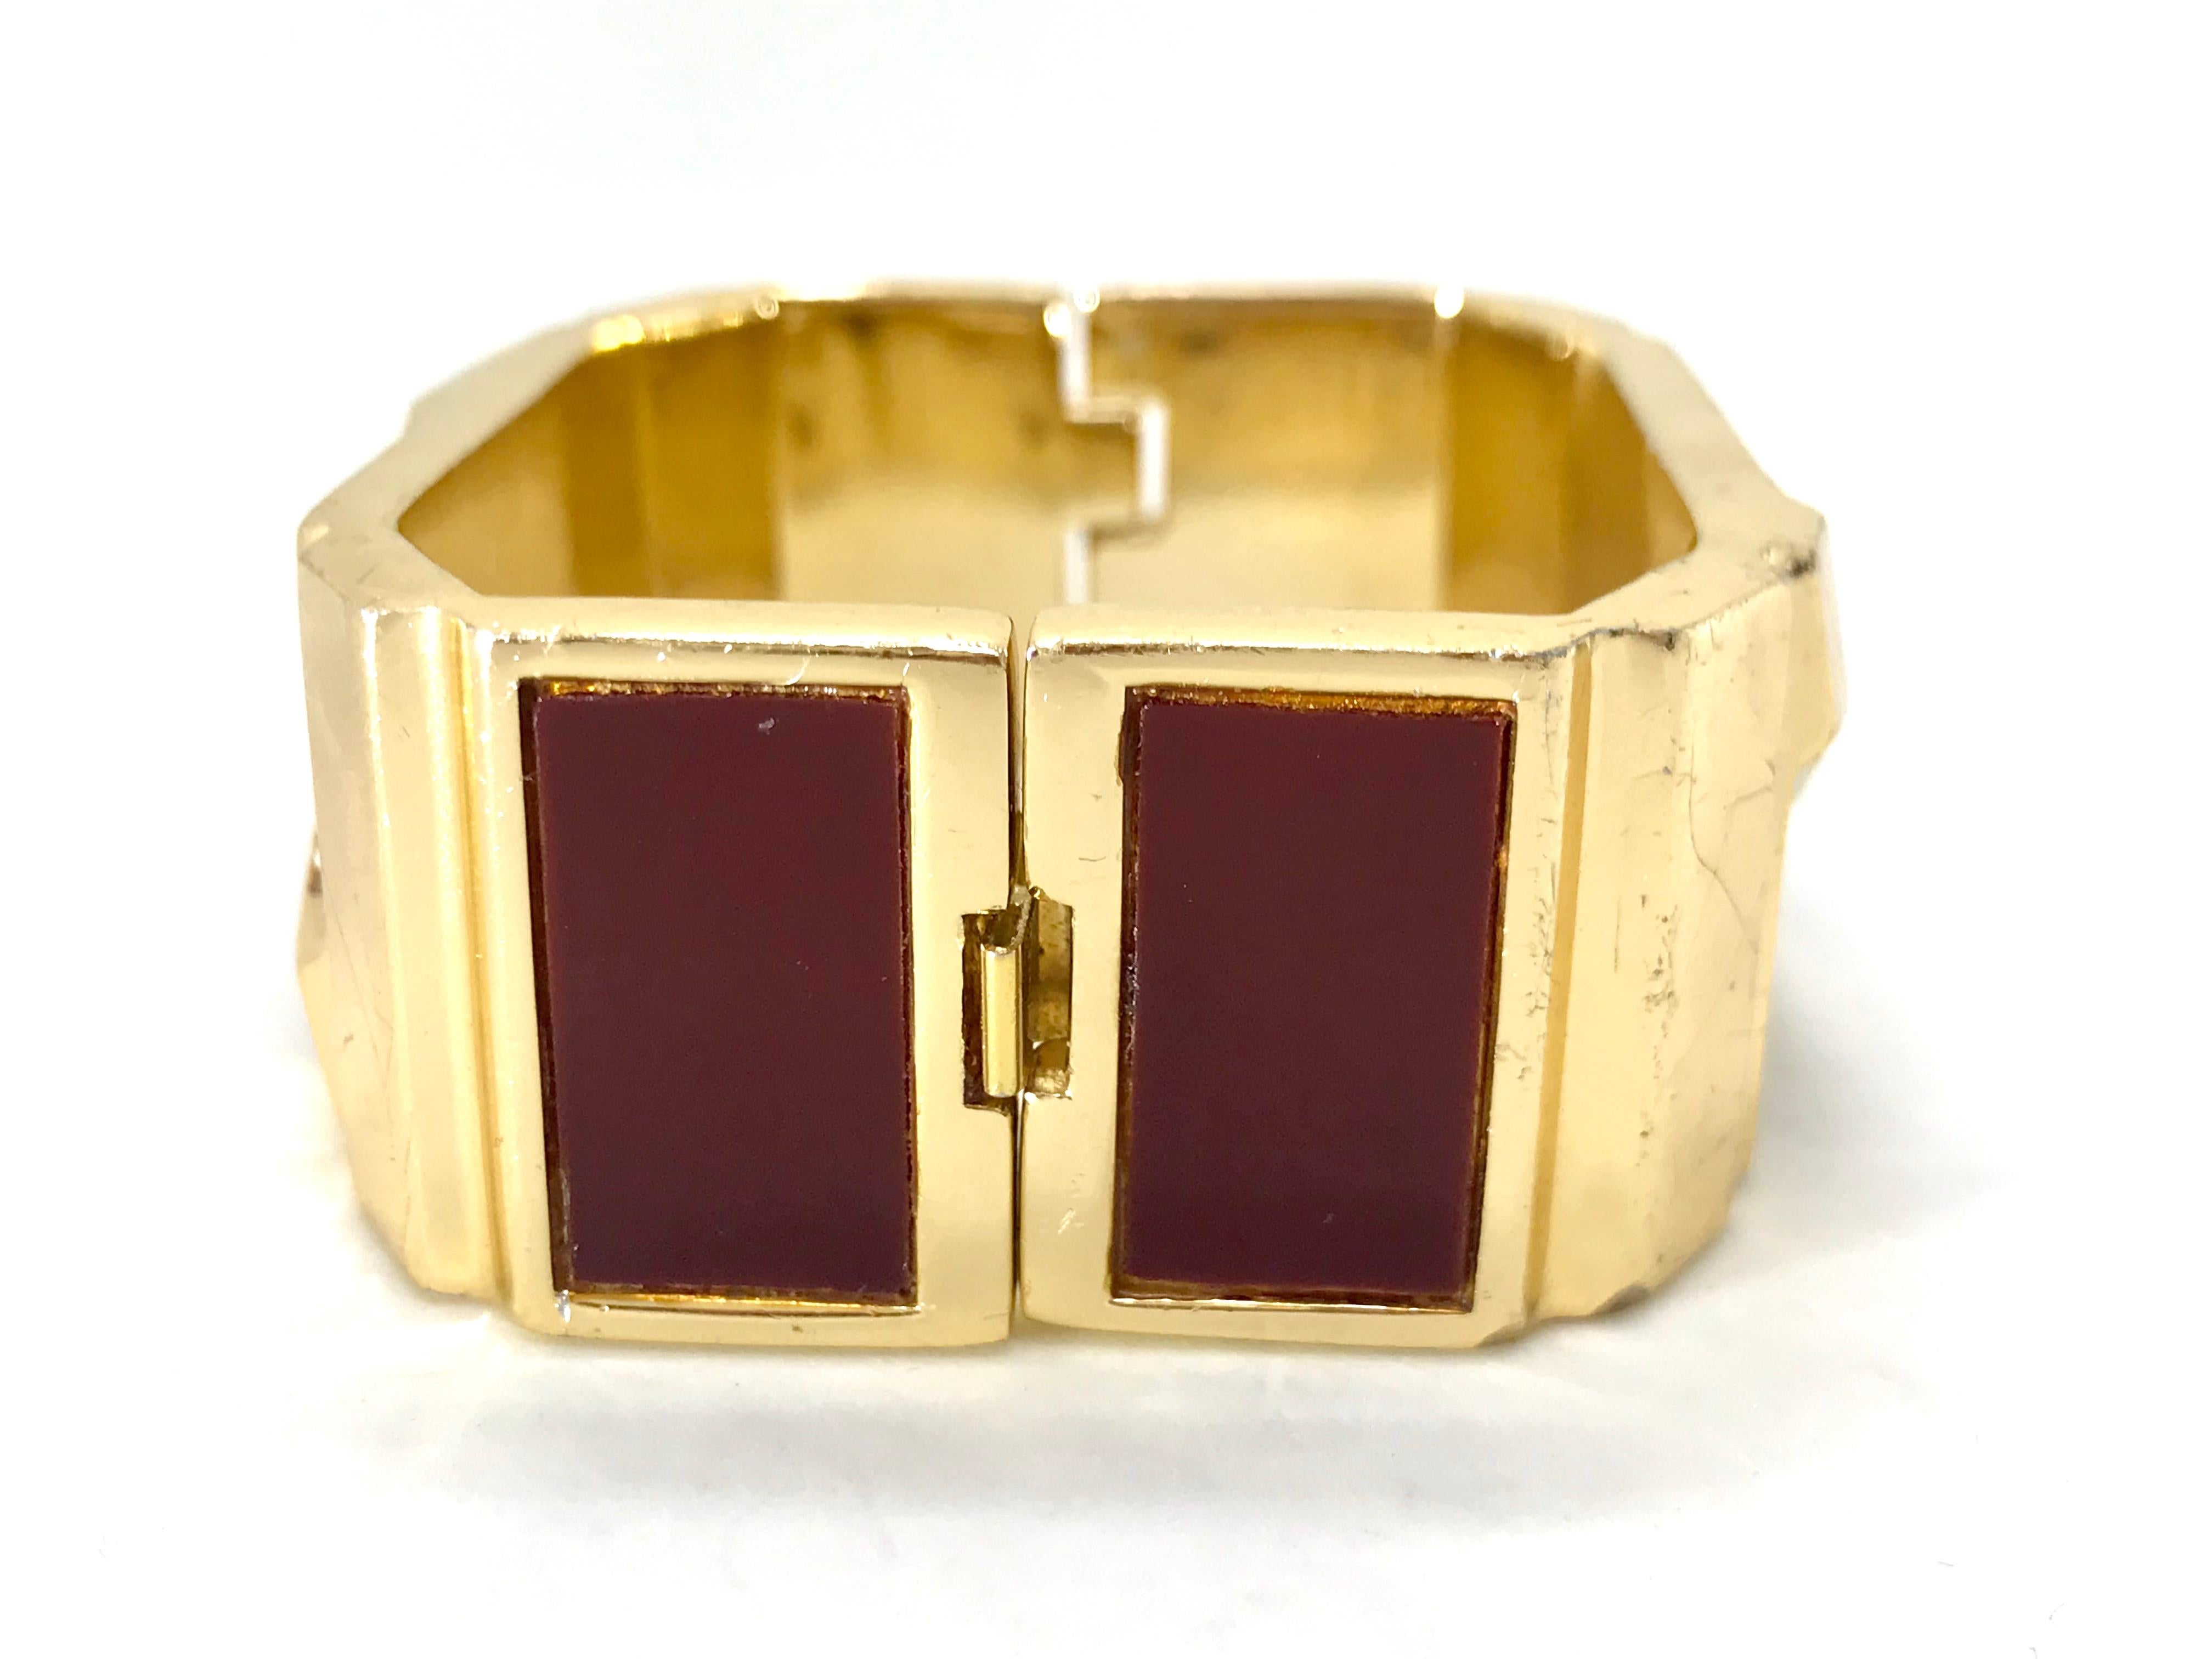 Lanvin 1970s Modernist enamel bangle bracelet and pendant set For Sale 3